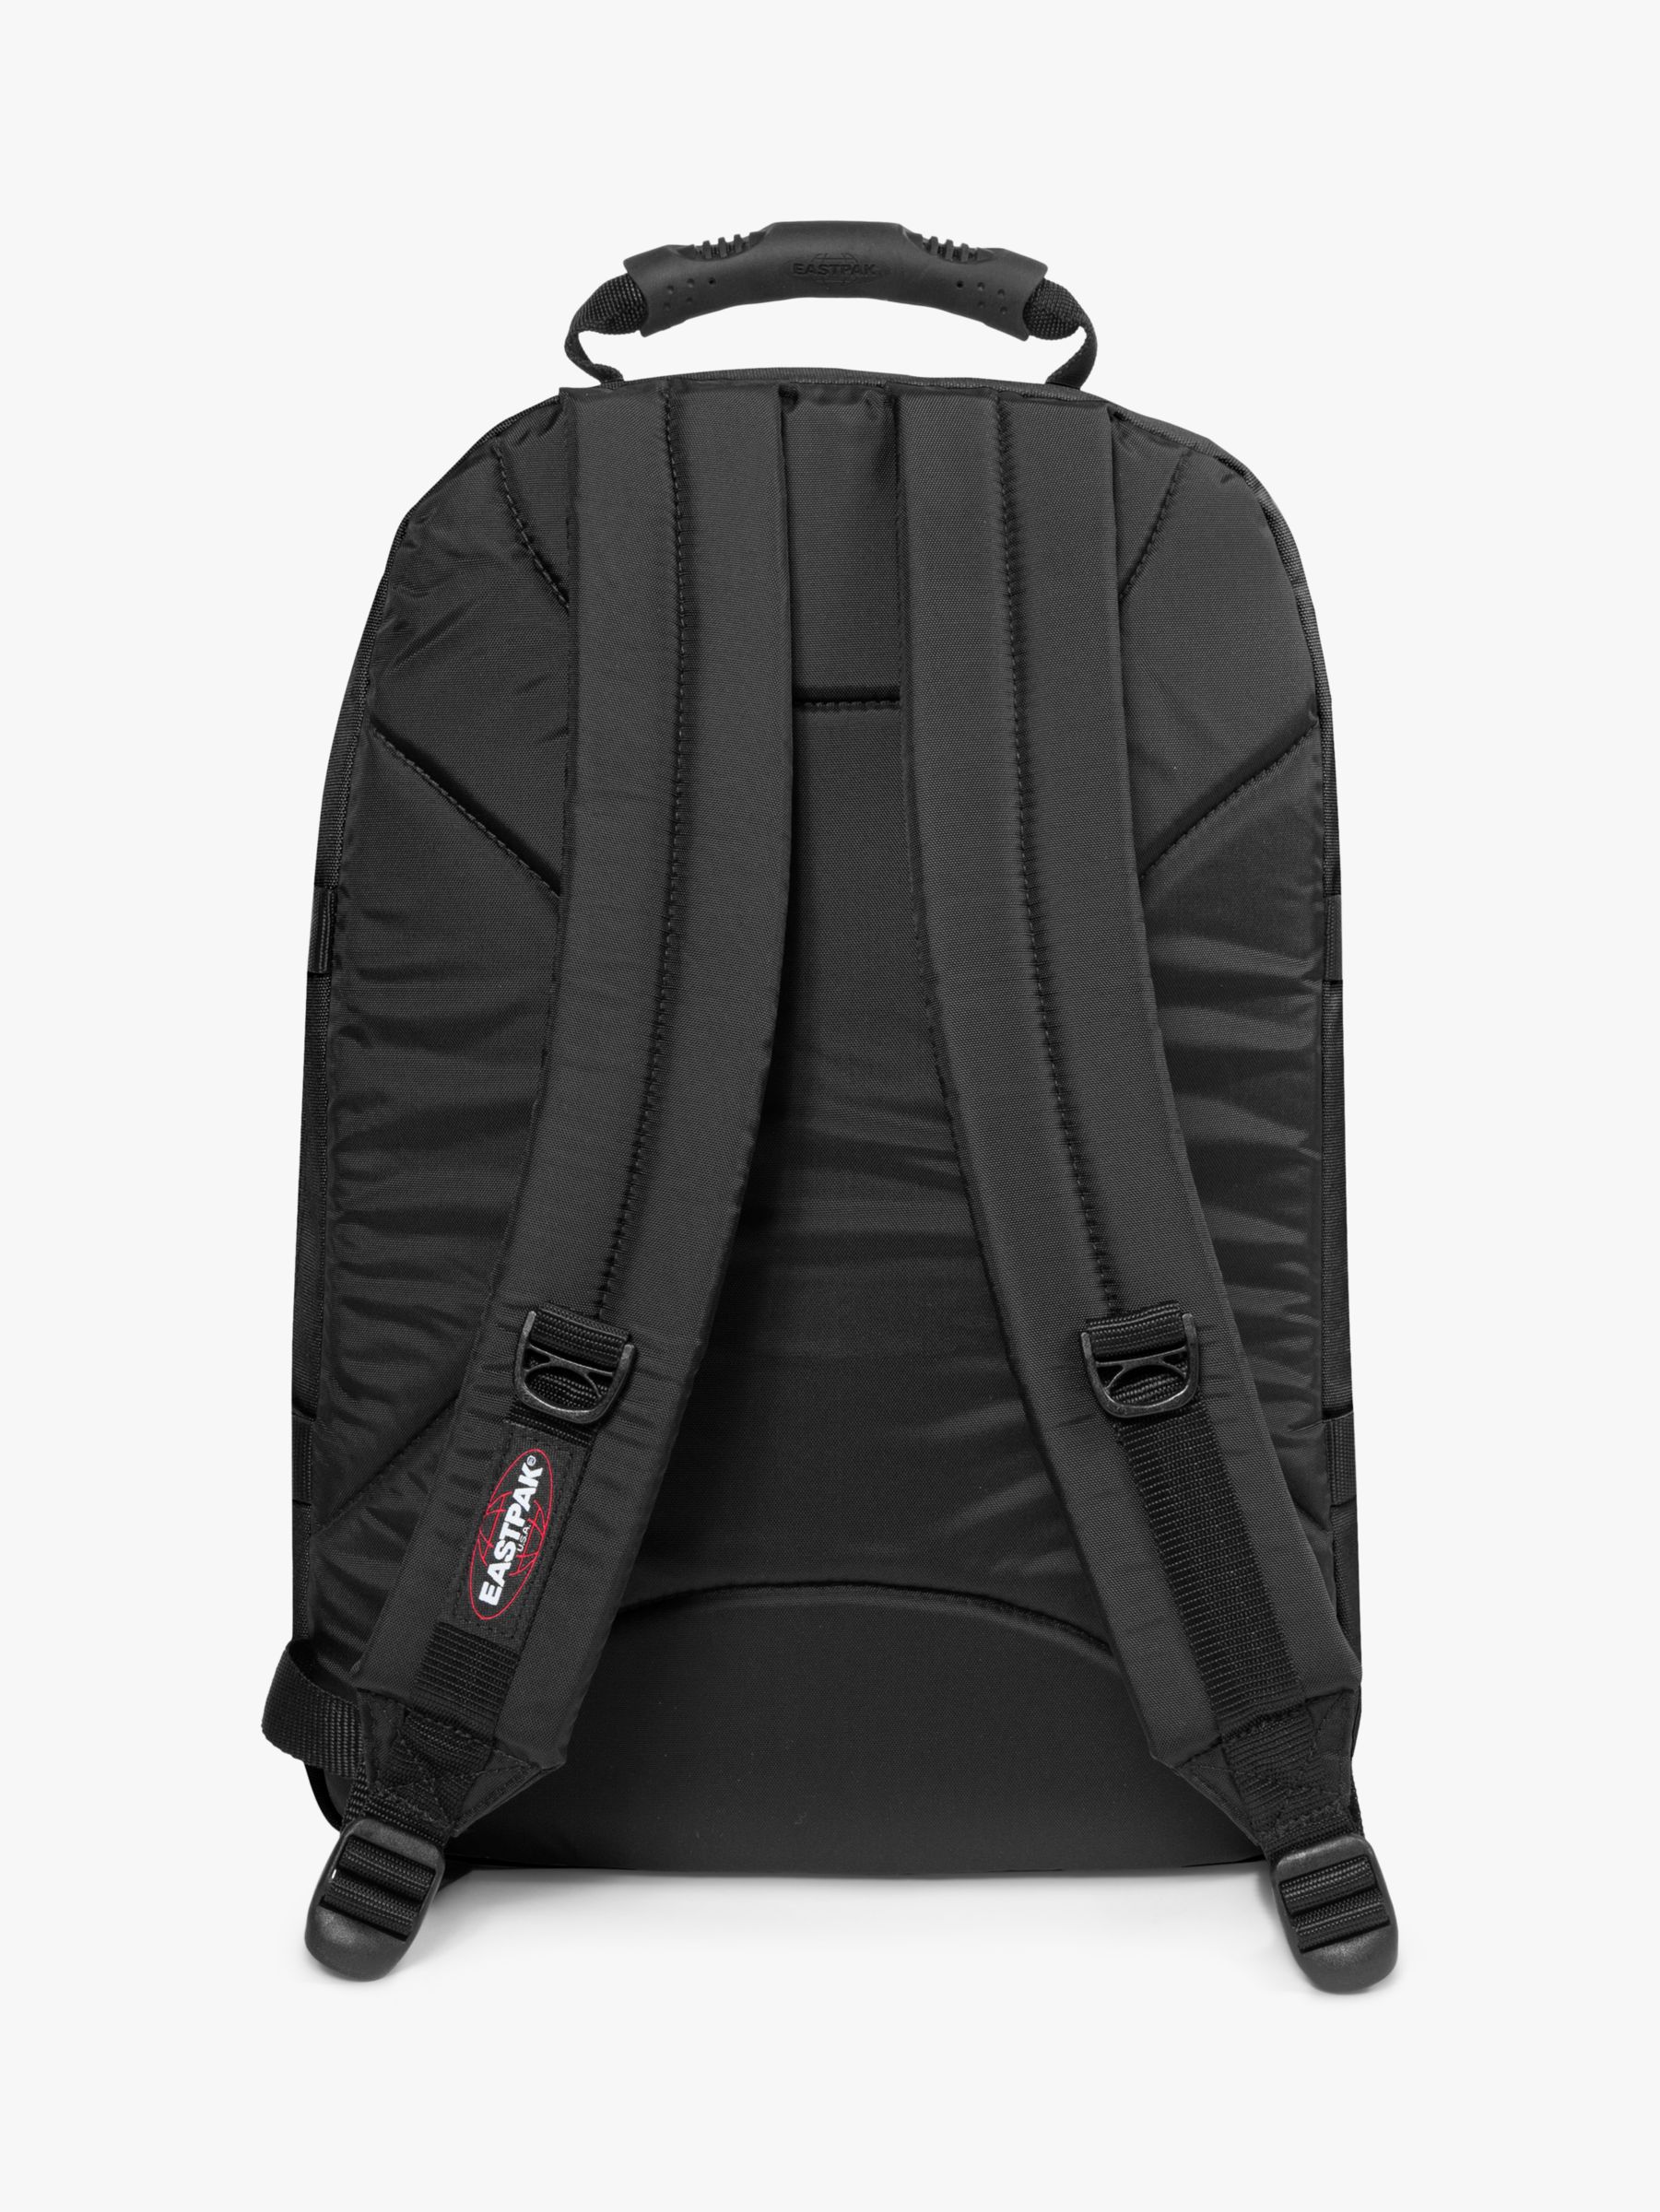 Buy Eastpak Provider 15" Laptop Backpack, Black Online at johnlewis.com